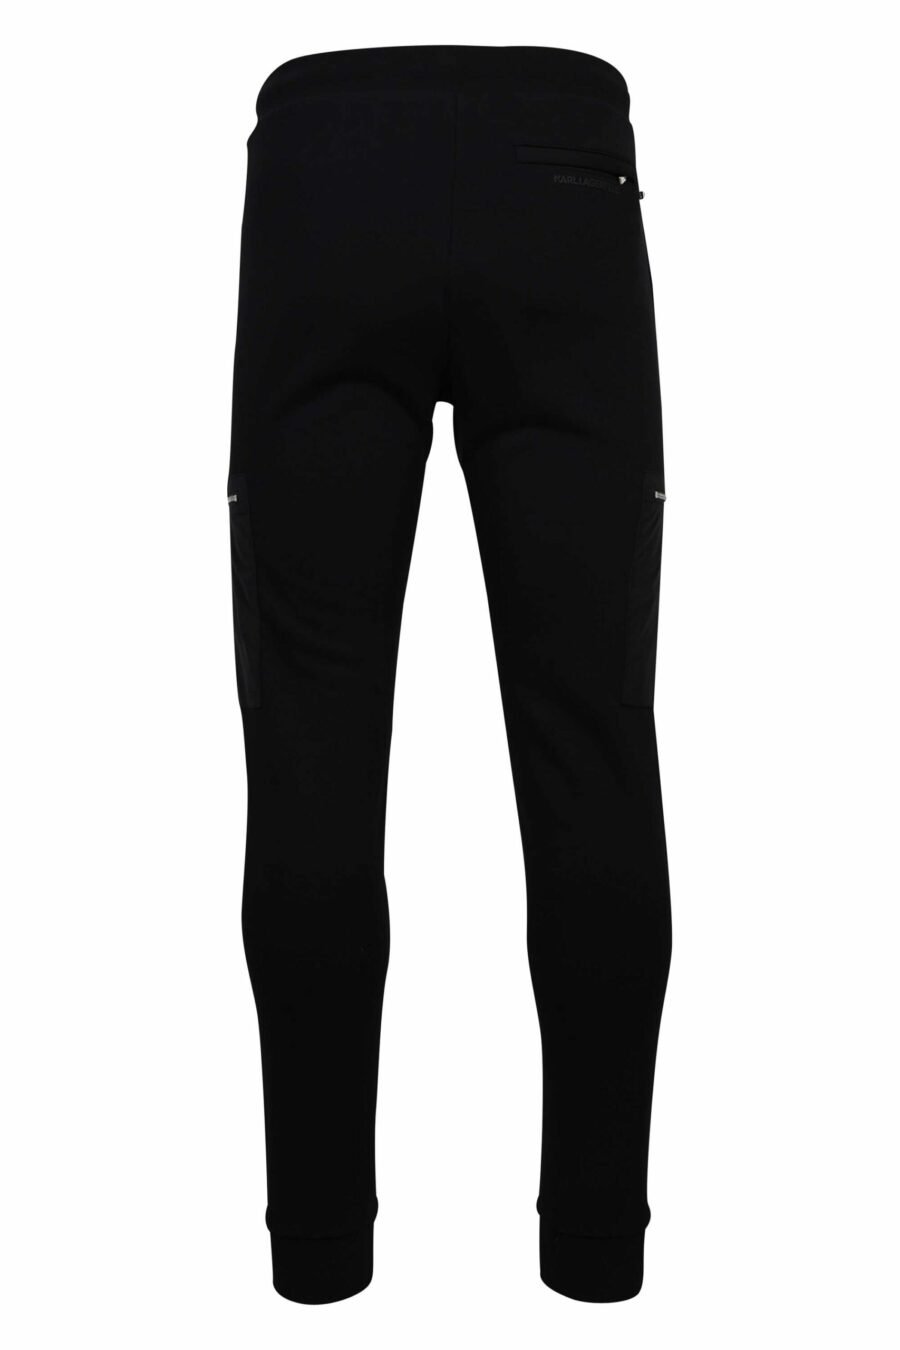 Pantalón de chándal negro con bolsillos laterales con cremallera - 4062226654265 2 1 scaled